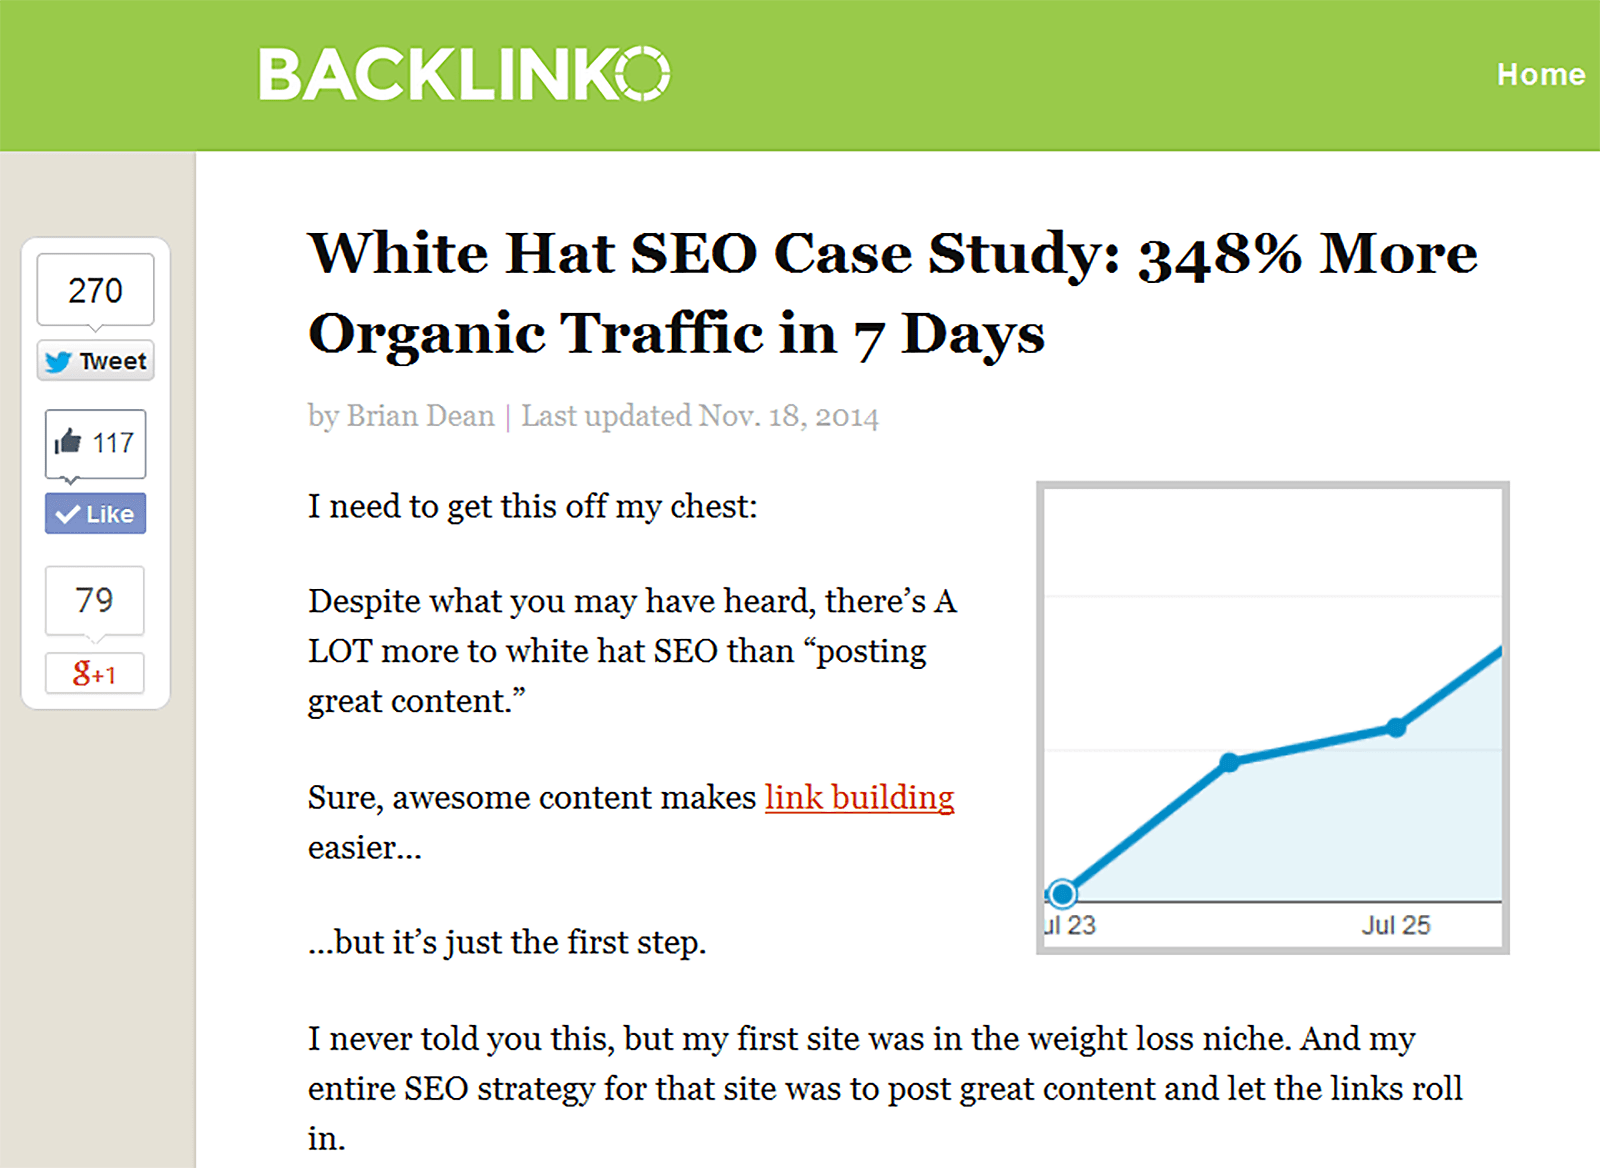 White hat SEO case study